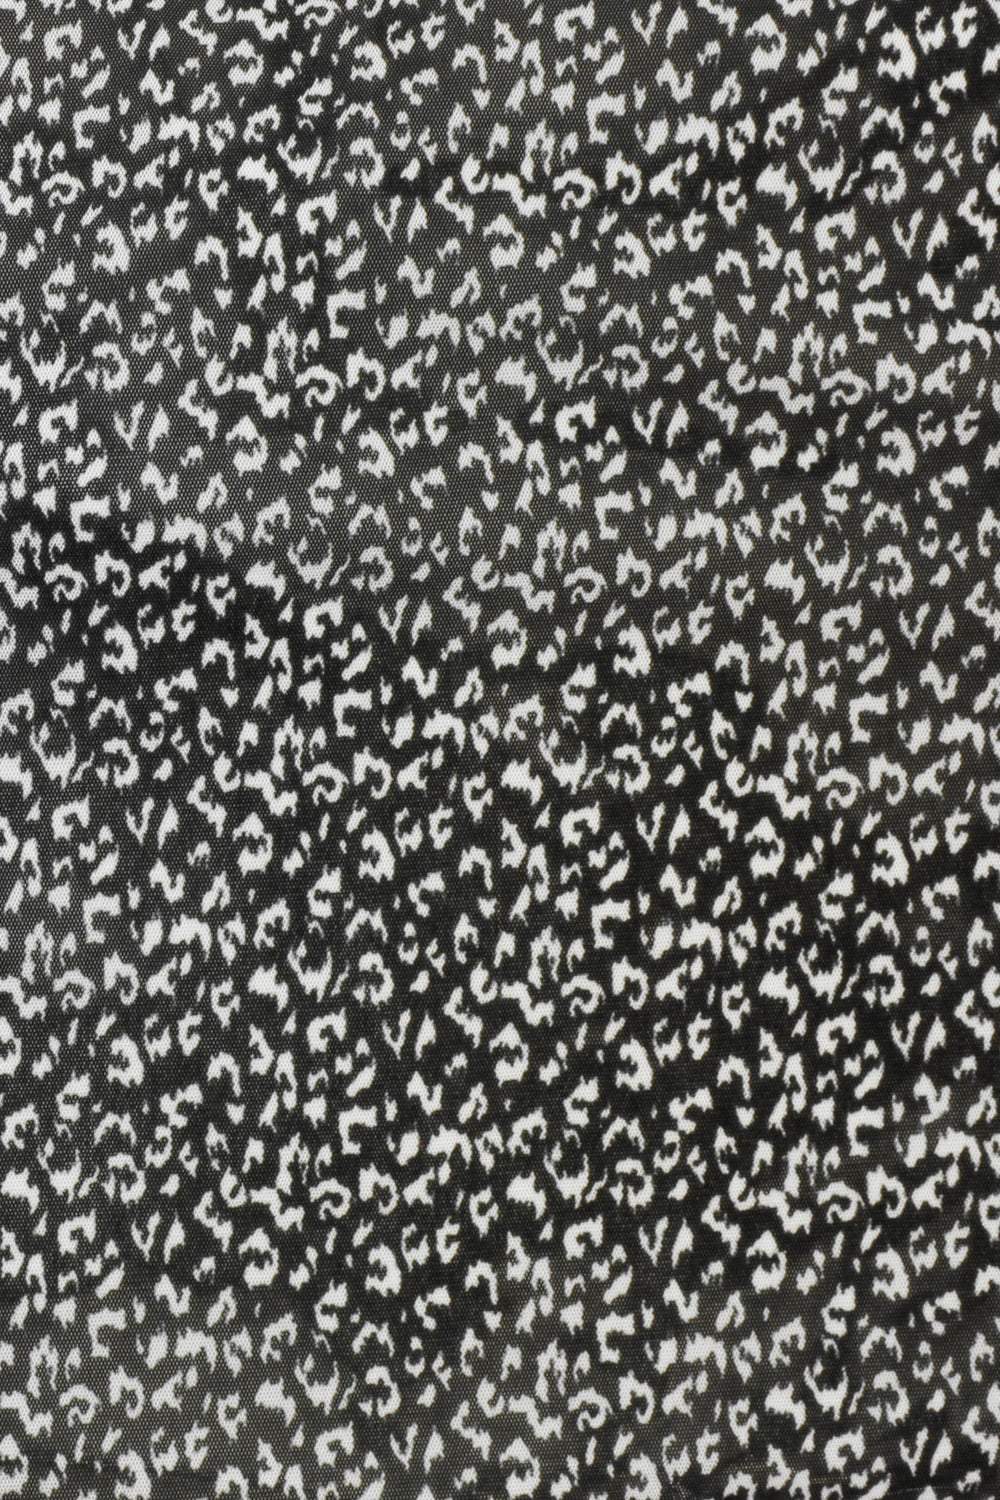 Leopard Print Mesh Black / White